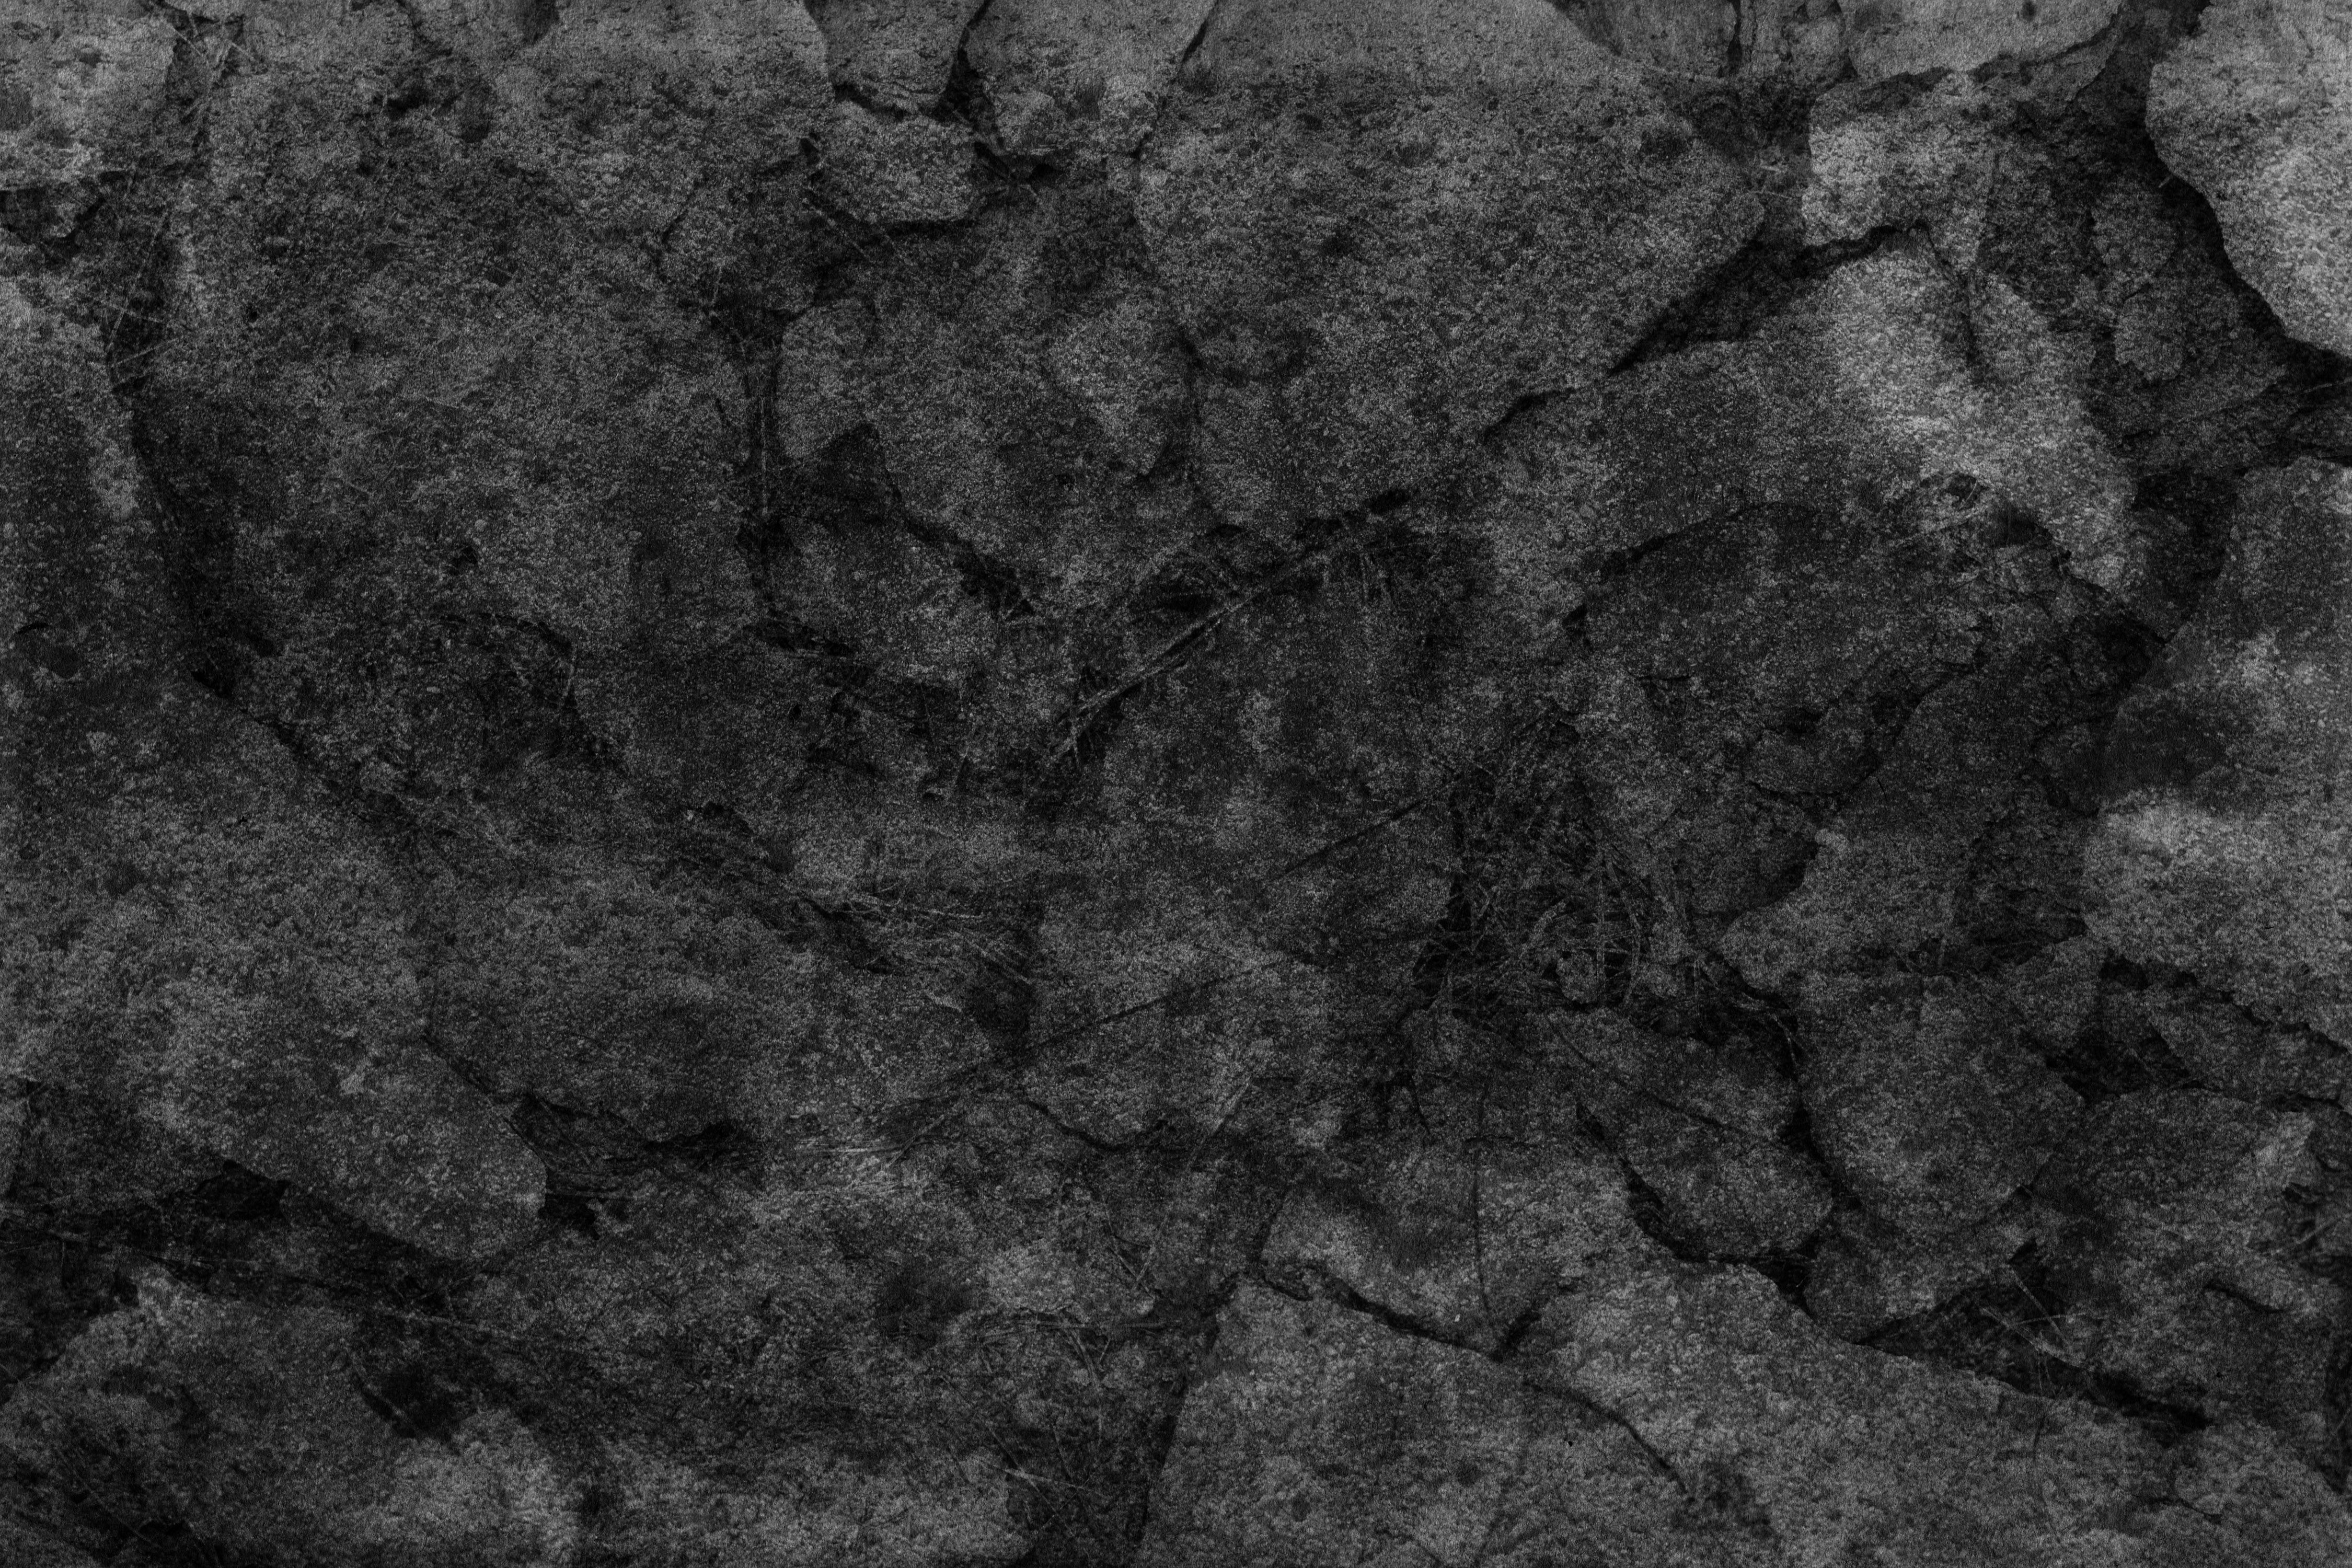 Grunge rock texture photo